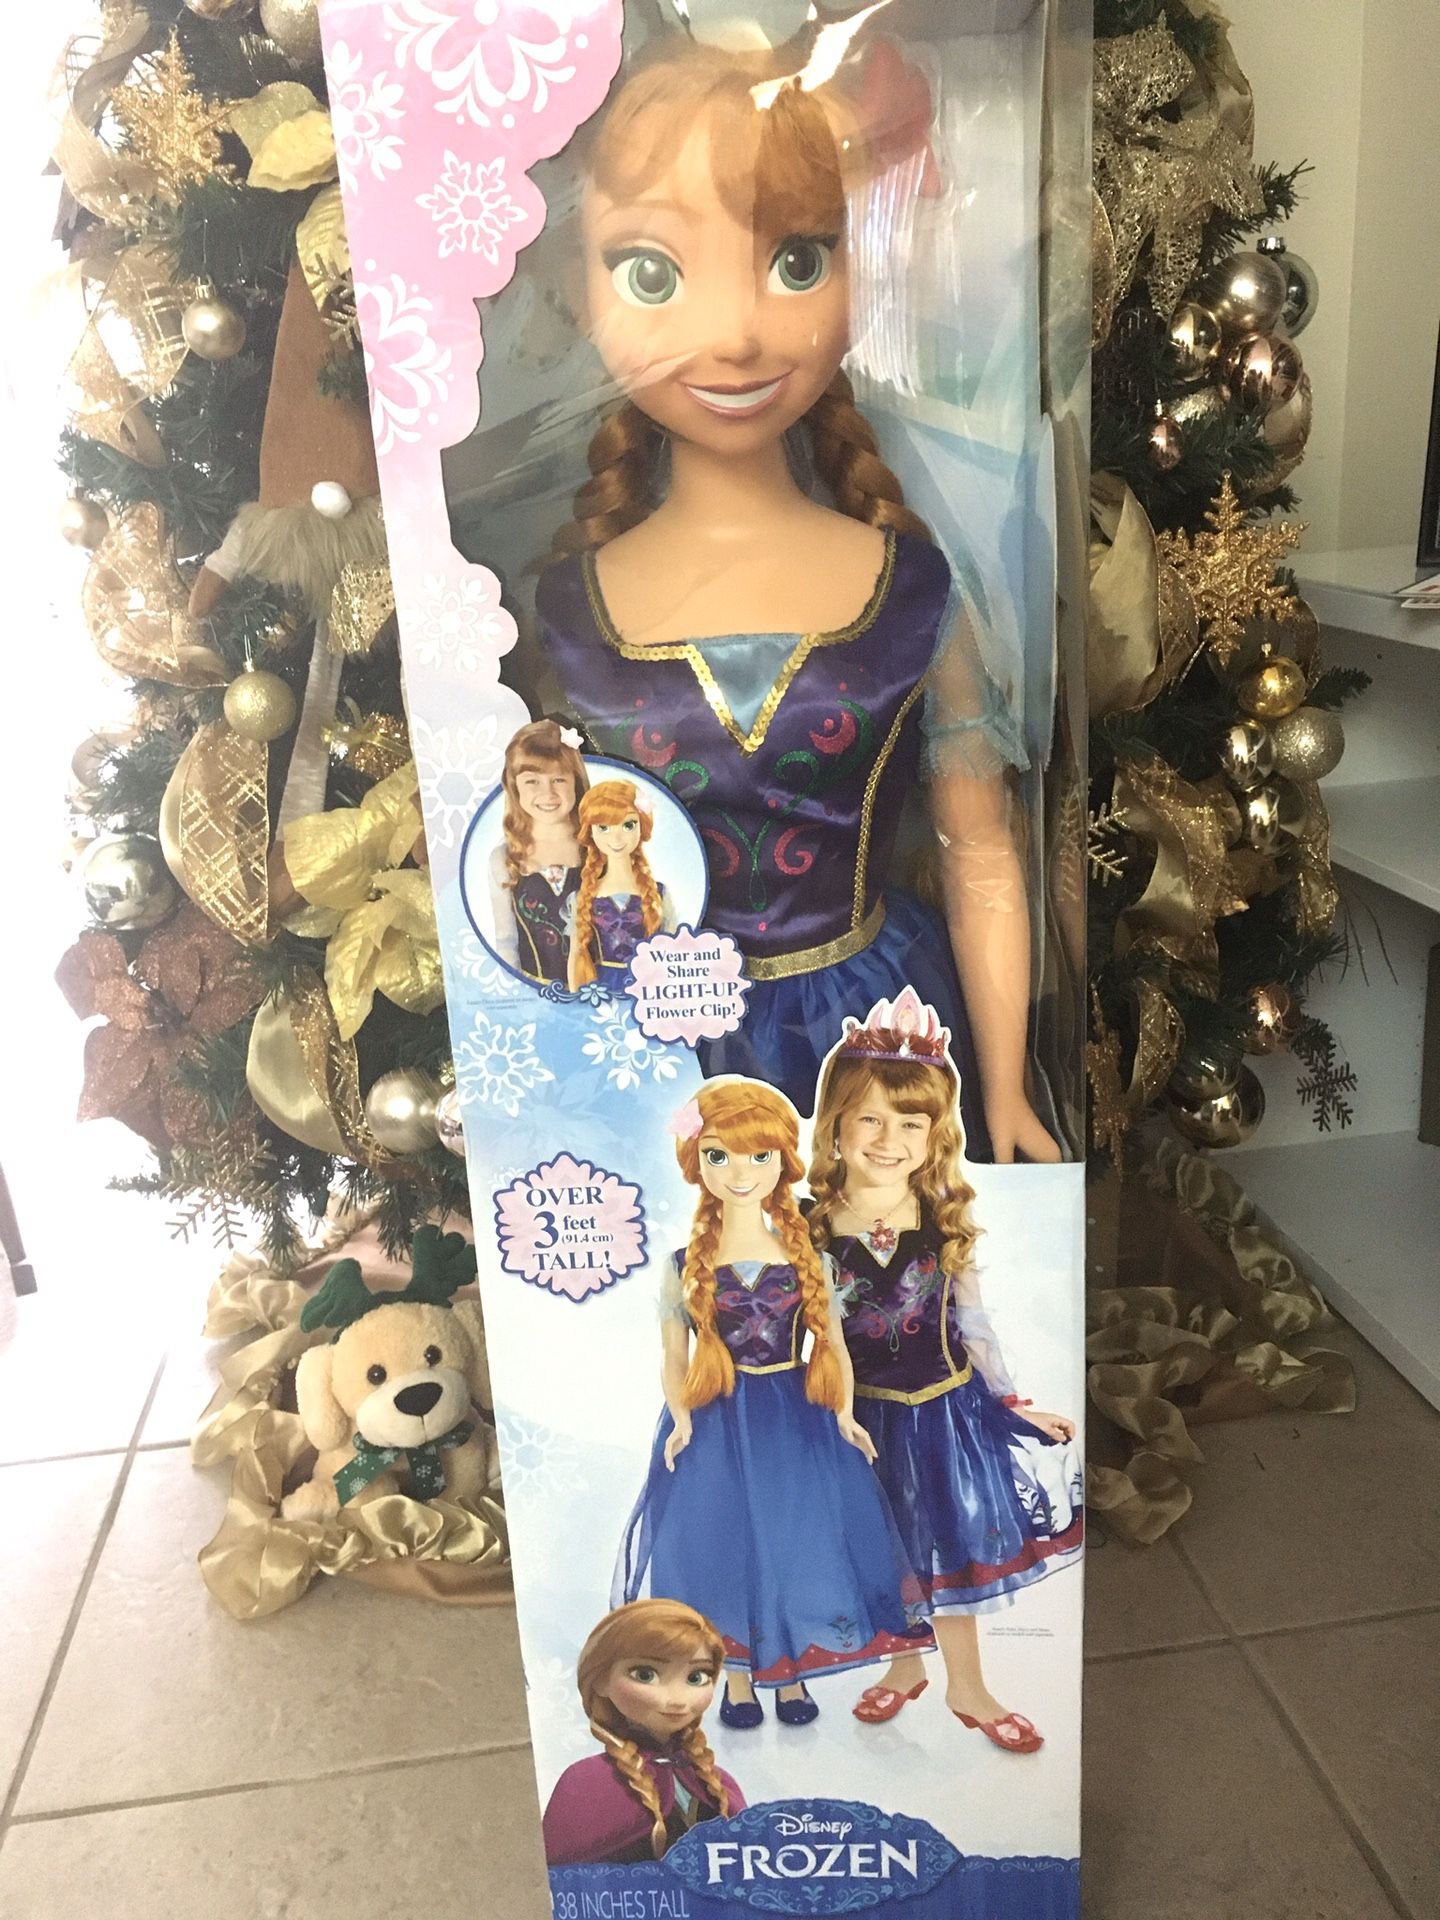 Disney Frozen My Size Anna Doll